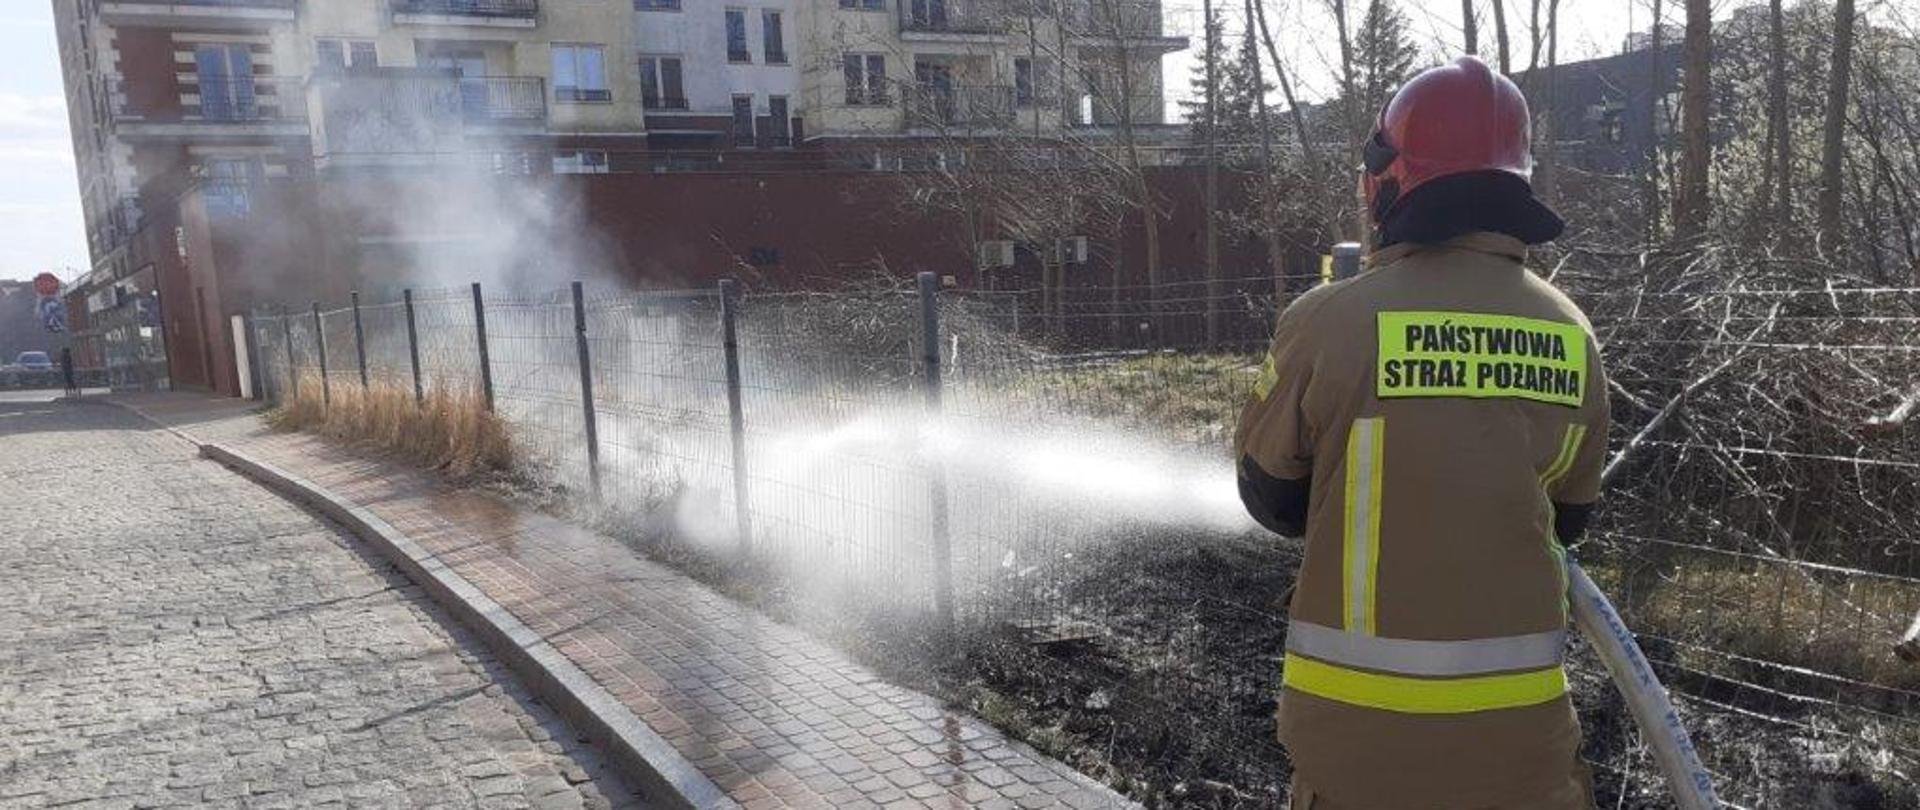 Pożary traw, działania gaśnicze ul. K. Wielkiego w Koszalinie